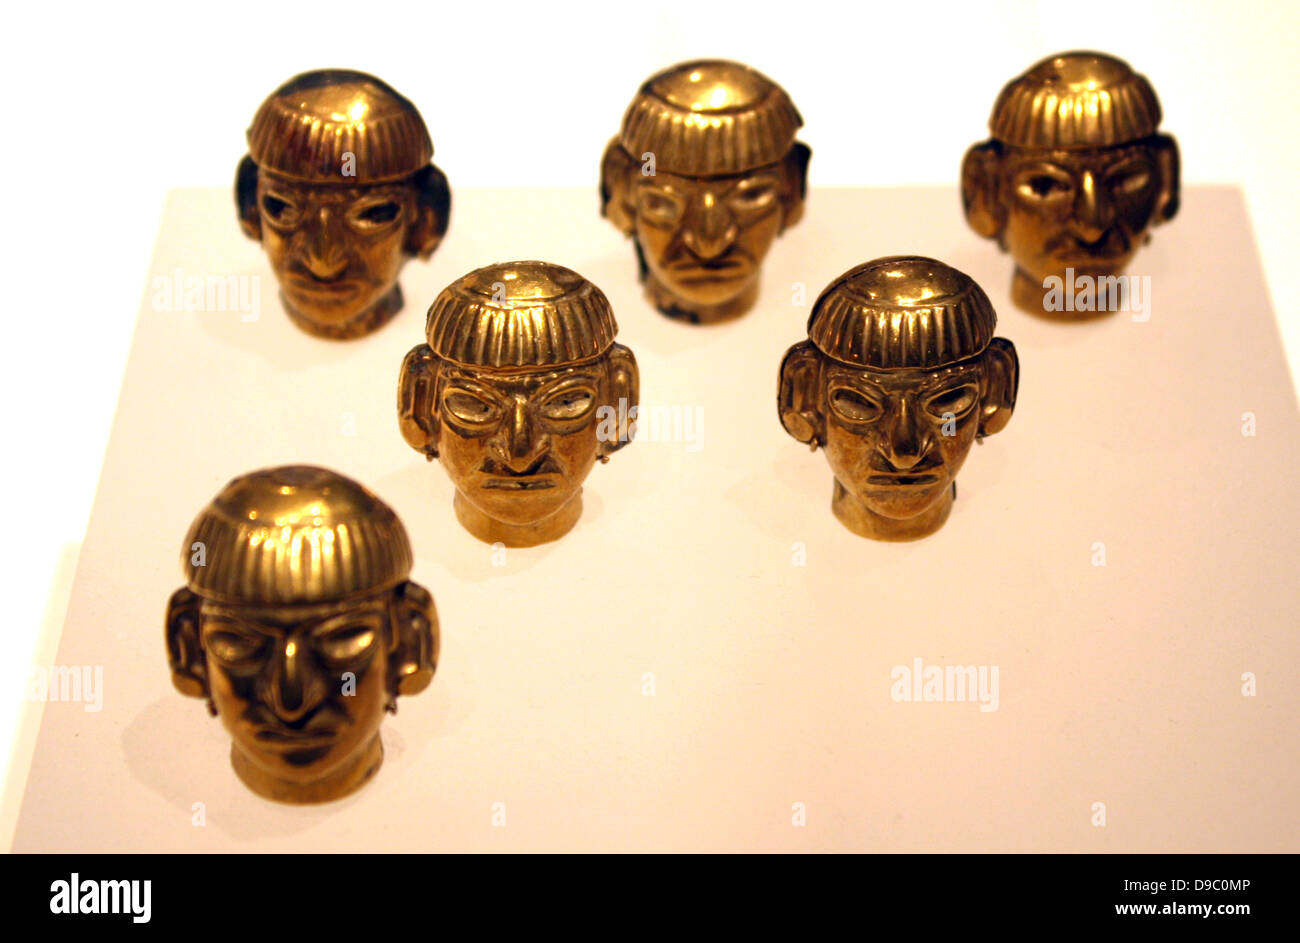 Head-Form Halskette Perlen. Peru Moche. 3. bis 7. Jahrhundert. Hammered Gold. Die Herrscher der Moche Königreiche trug Halsketten, dass Gold Perlen wie diese, die in Flächen umgearbeitet wurden, bestand. Stockfoto